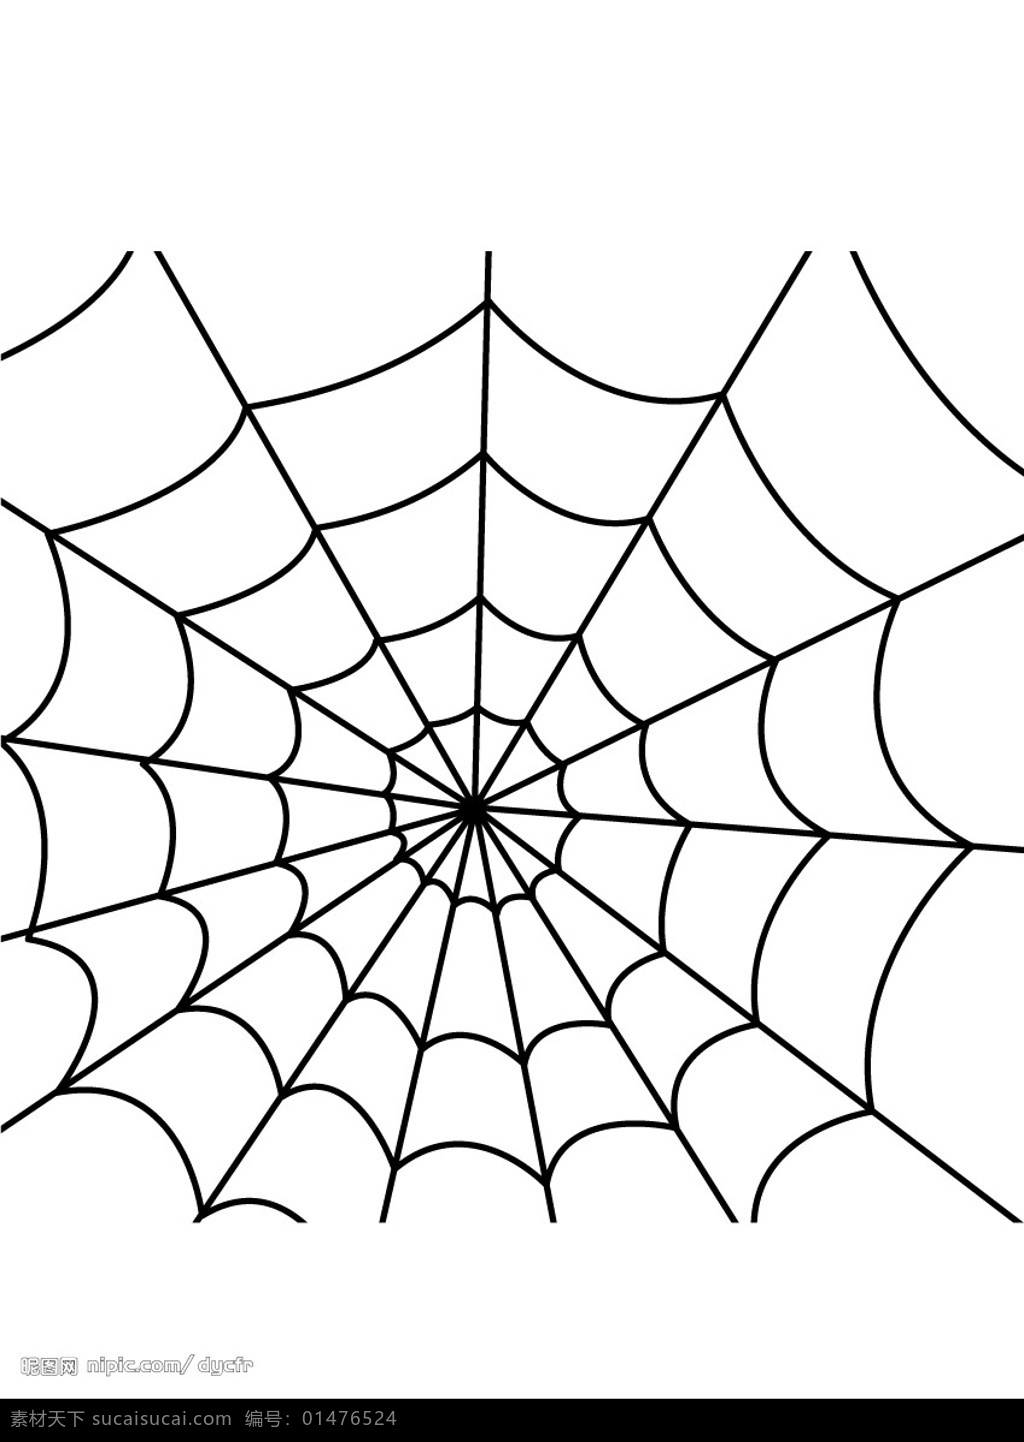 蜘蛛网背景 背景图 底纹边框 底纹背景 矢量图库